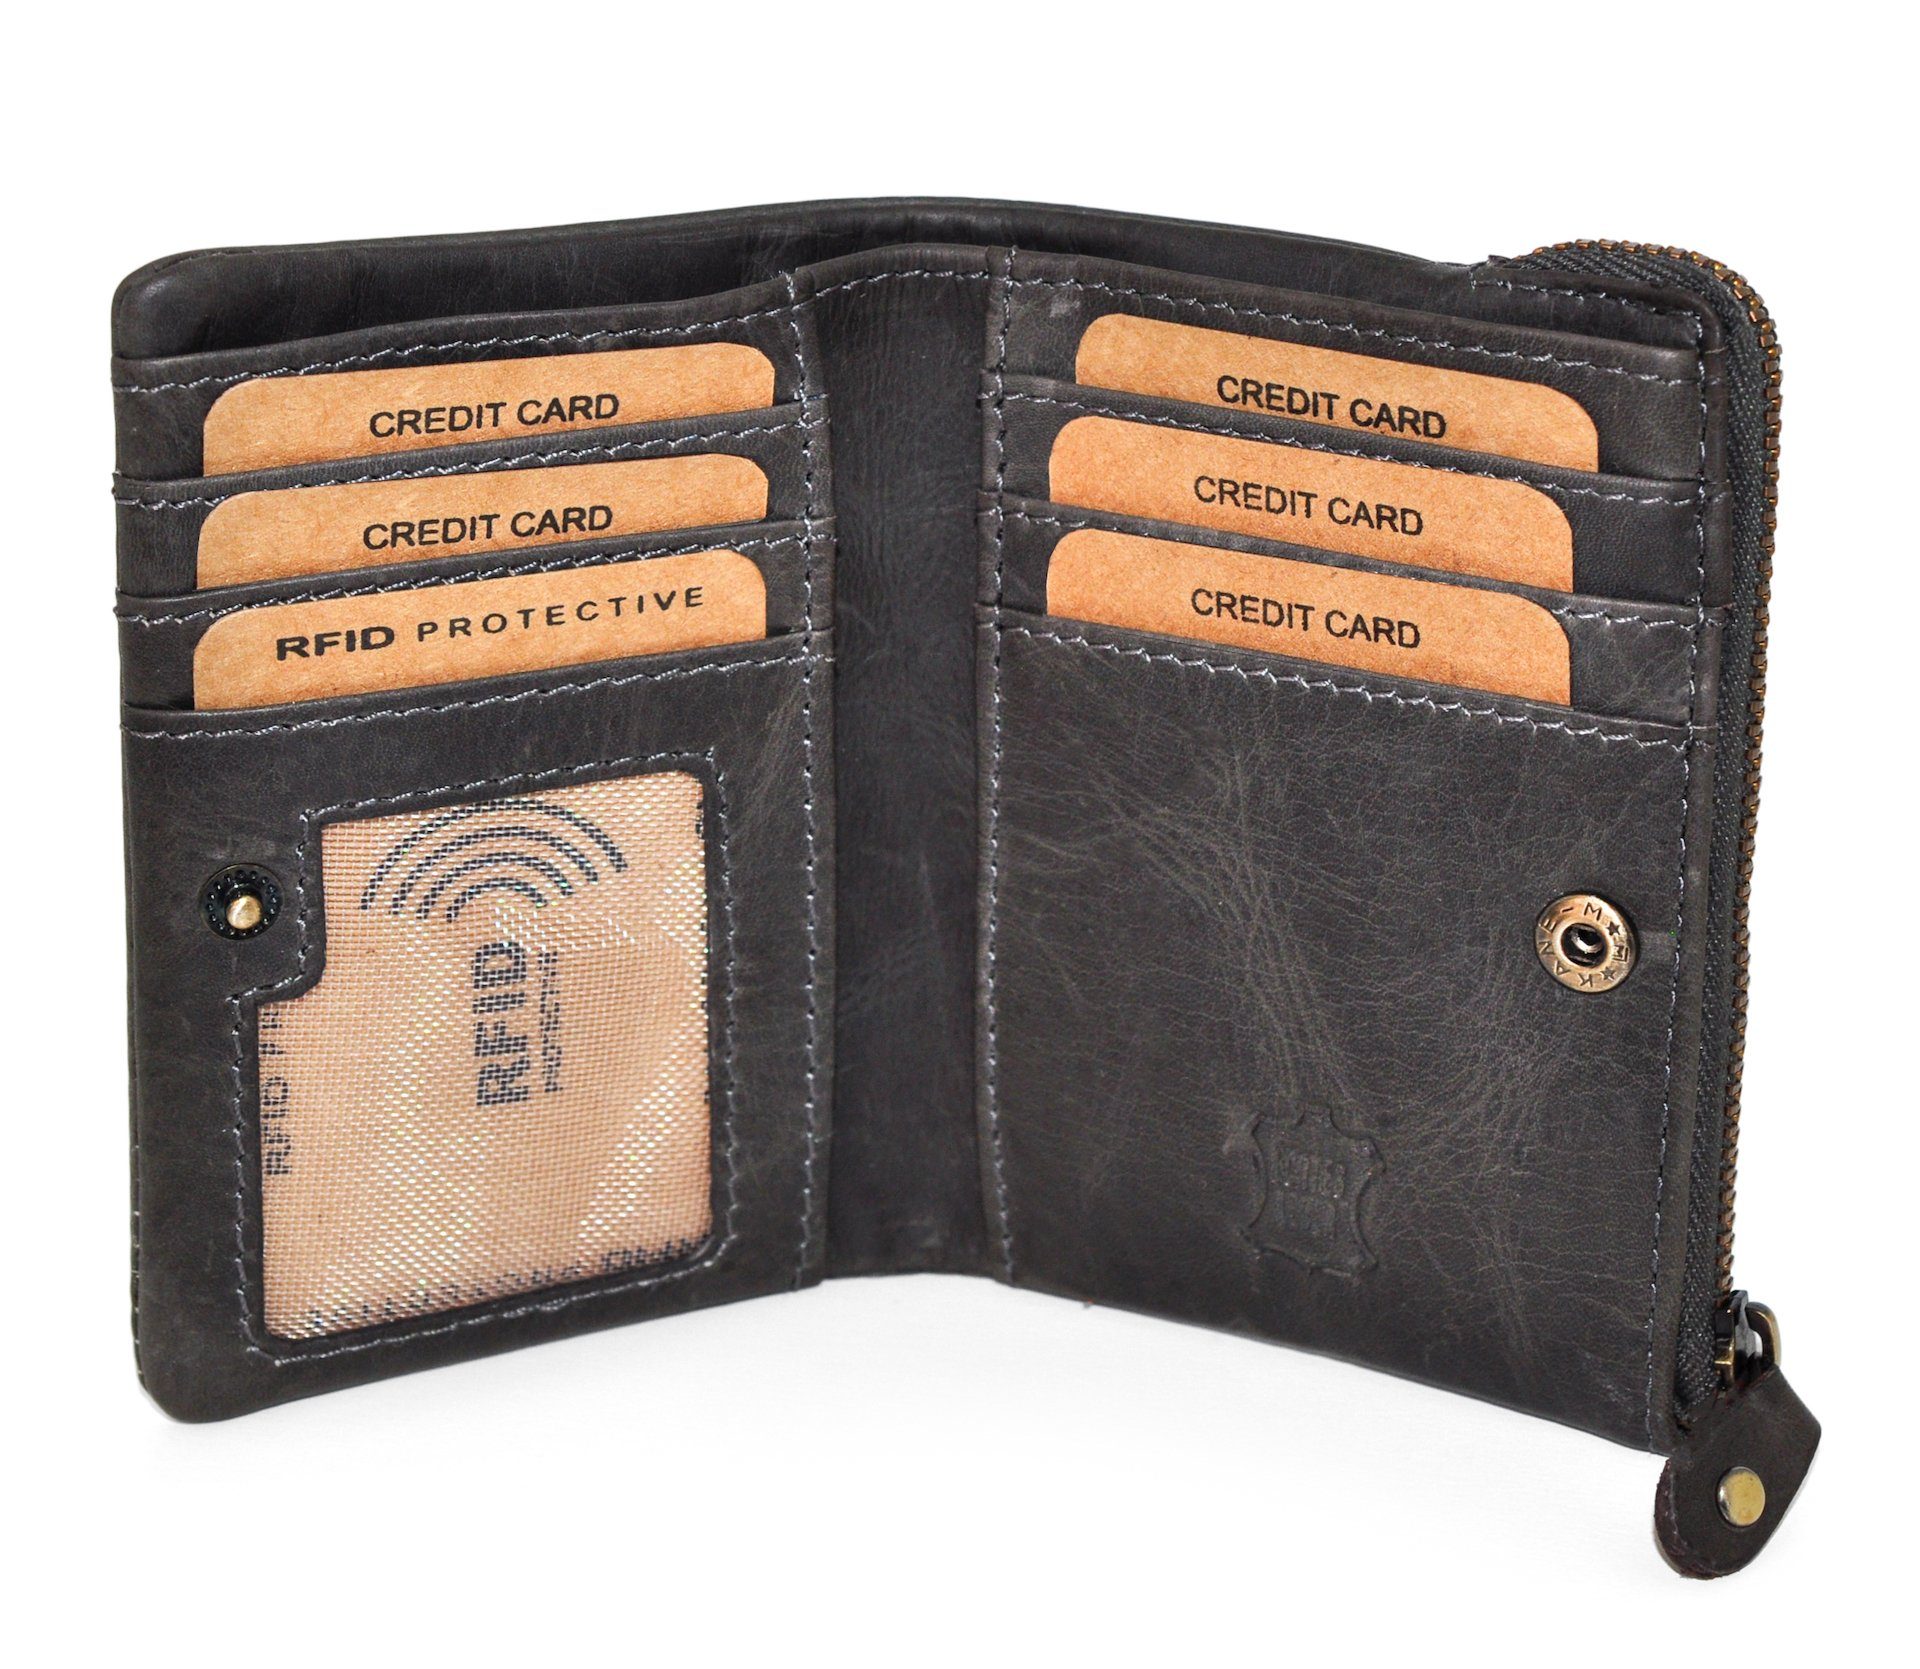 Benthill Geldbörse Klein Echt Schutz Reißverschlussfach RFID-Schutz Slim-Wallet, Grau Kartenfächer RFID Geldbeutel Leder Münzfach 6 Kartenfächer